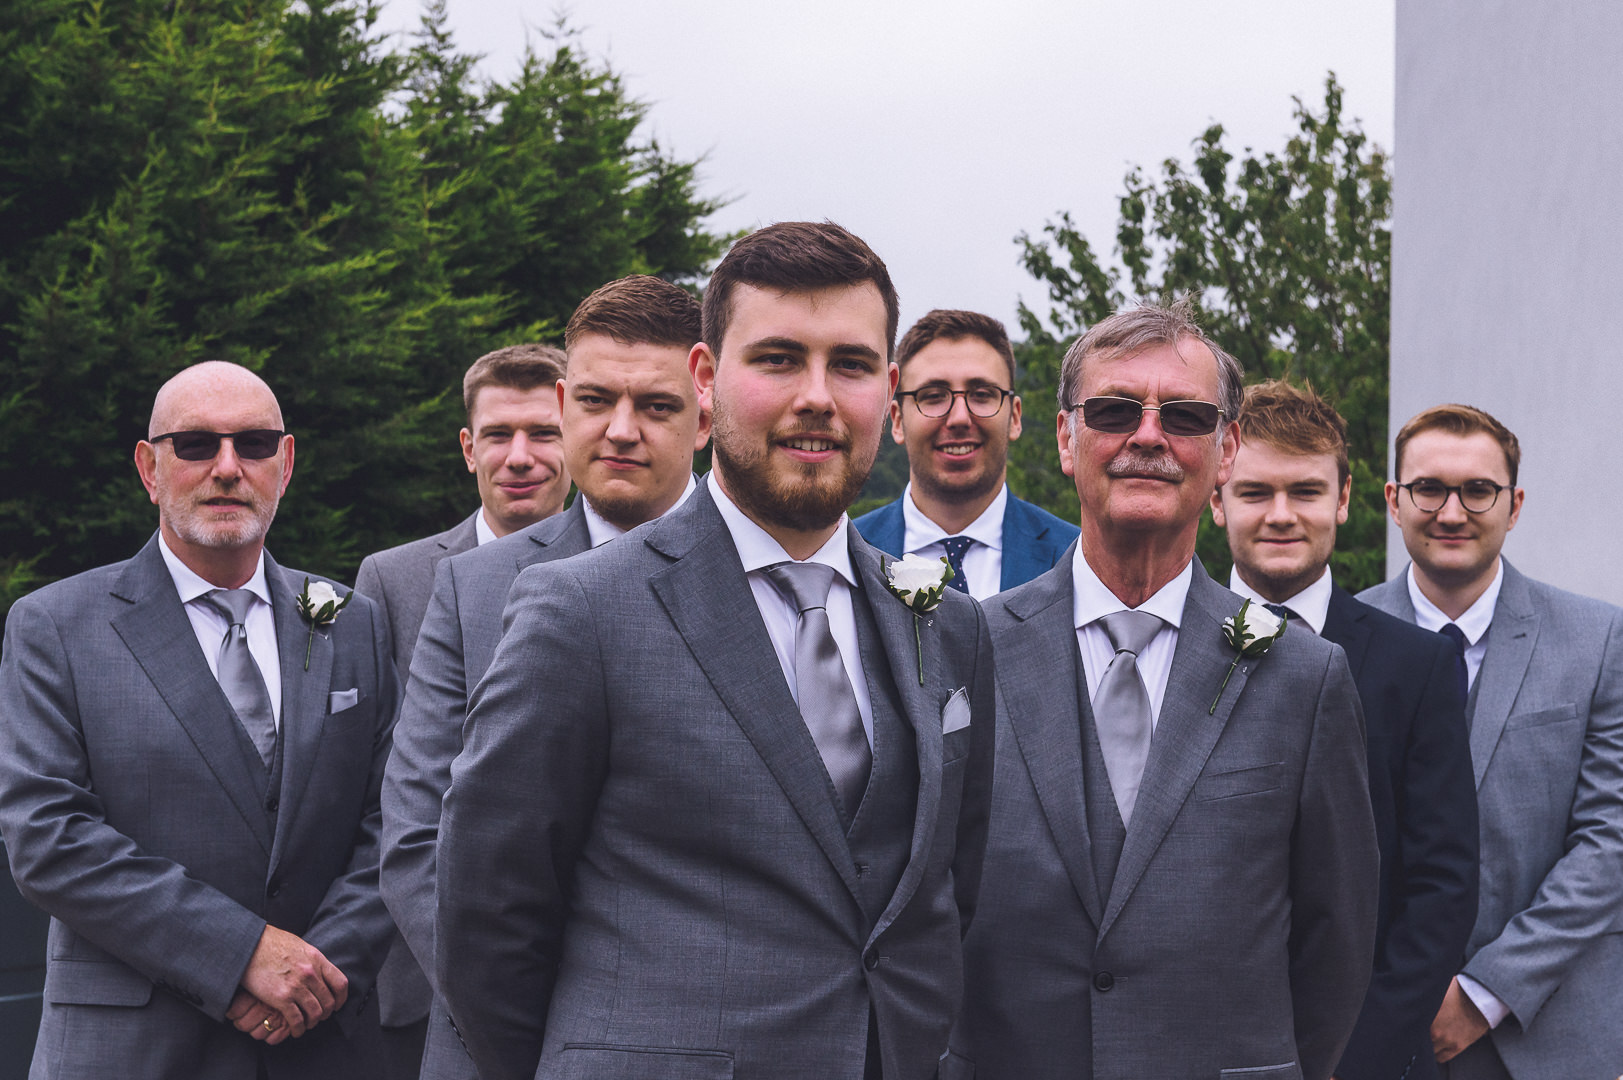 the groom stands in front of his groomsmen